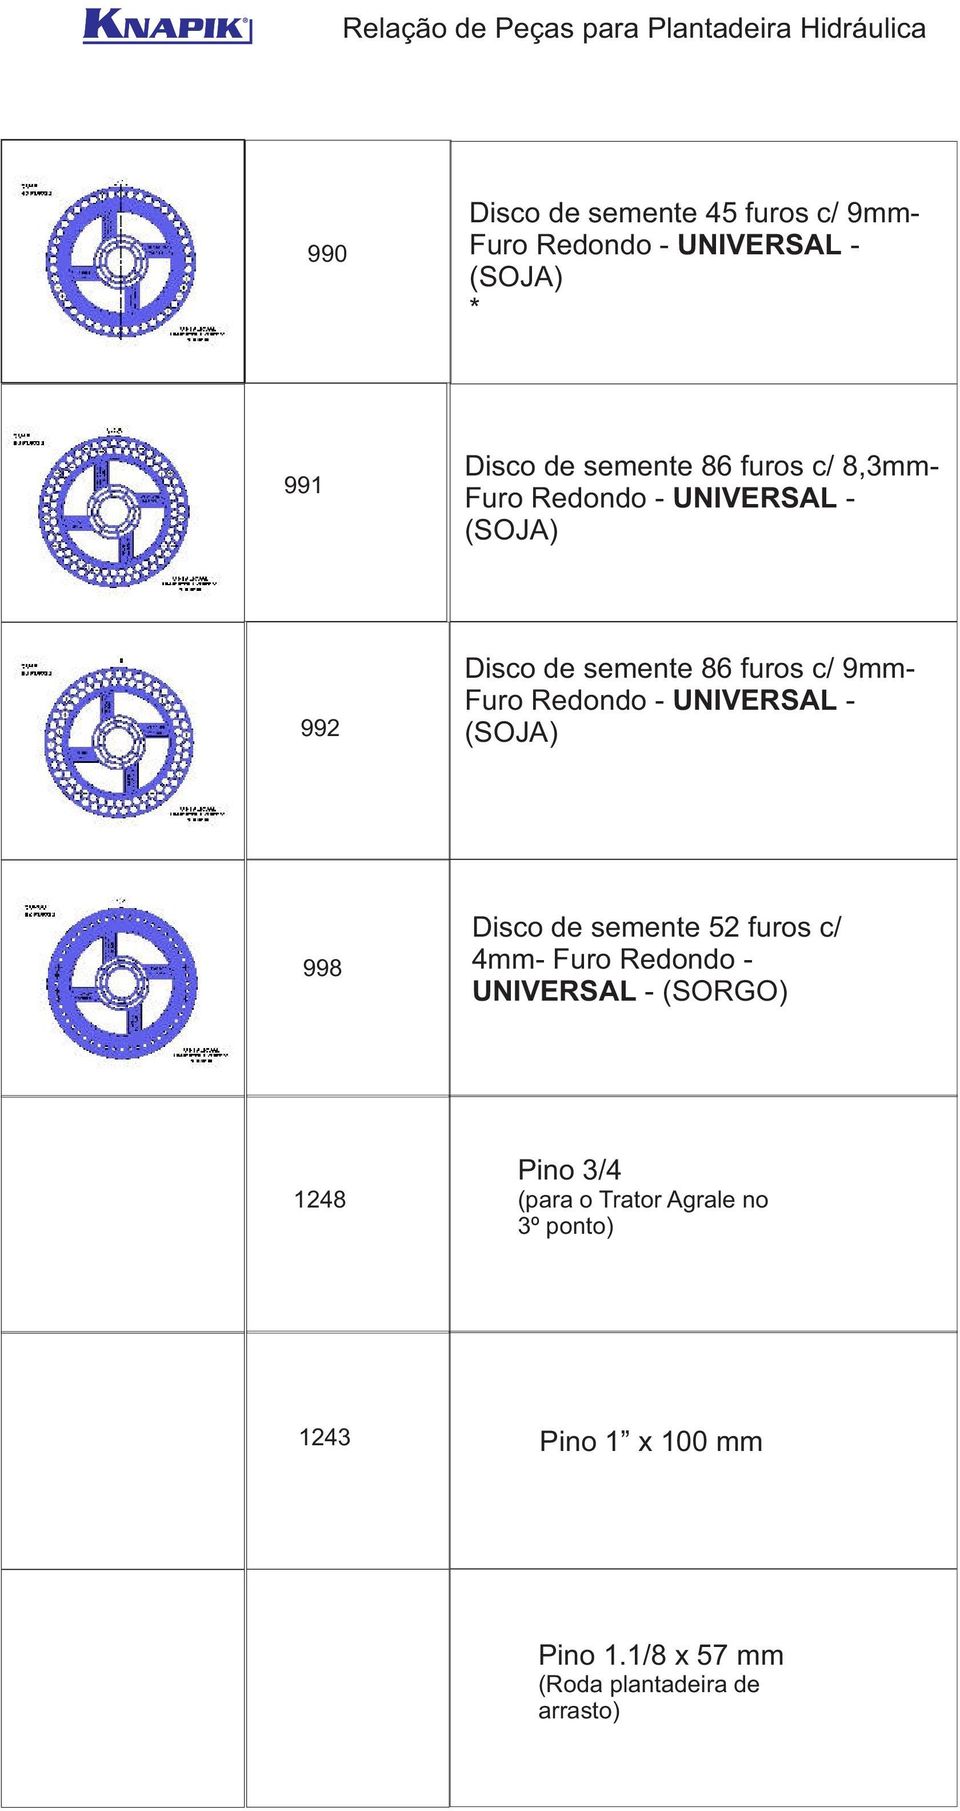 UNIVERSAL - (SOJA) 998 Disco de semente 52 furos c/ 4mm- Furo Redondo - UNIVERSAL - (SORGO) 1248 Pino